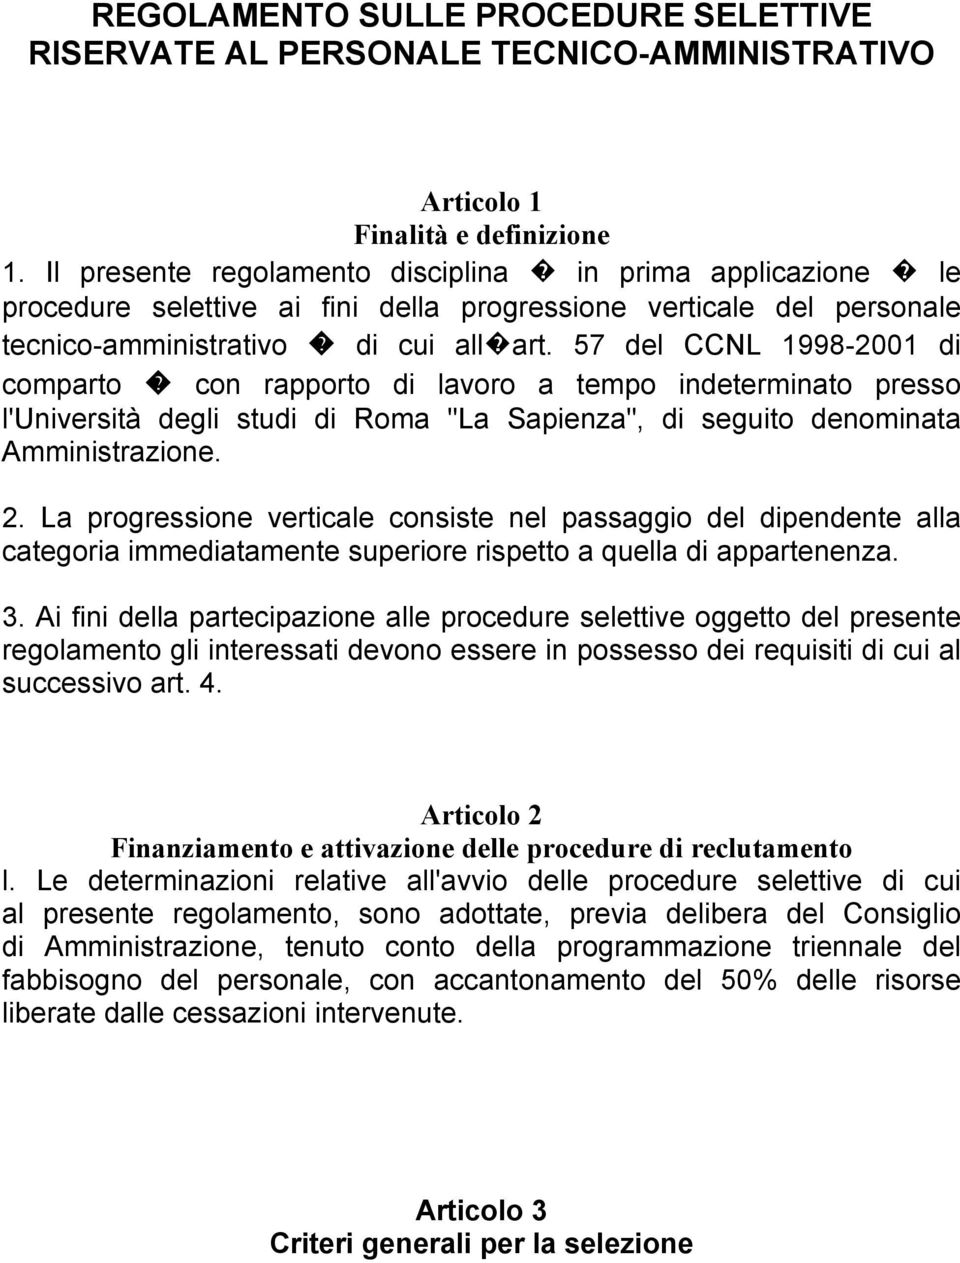 57 del CCNL 1998-2001 di comparto con rapporto di lavoro a tempo indeterminato presso l'università degli studi di Roma "La Sapienza", di seguito denominata Amministrazione. 2.